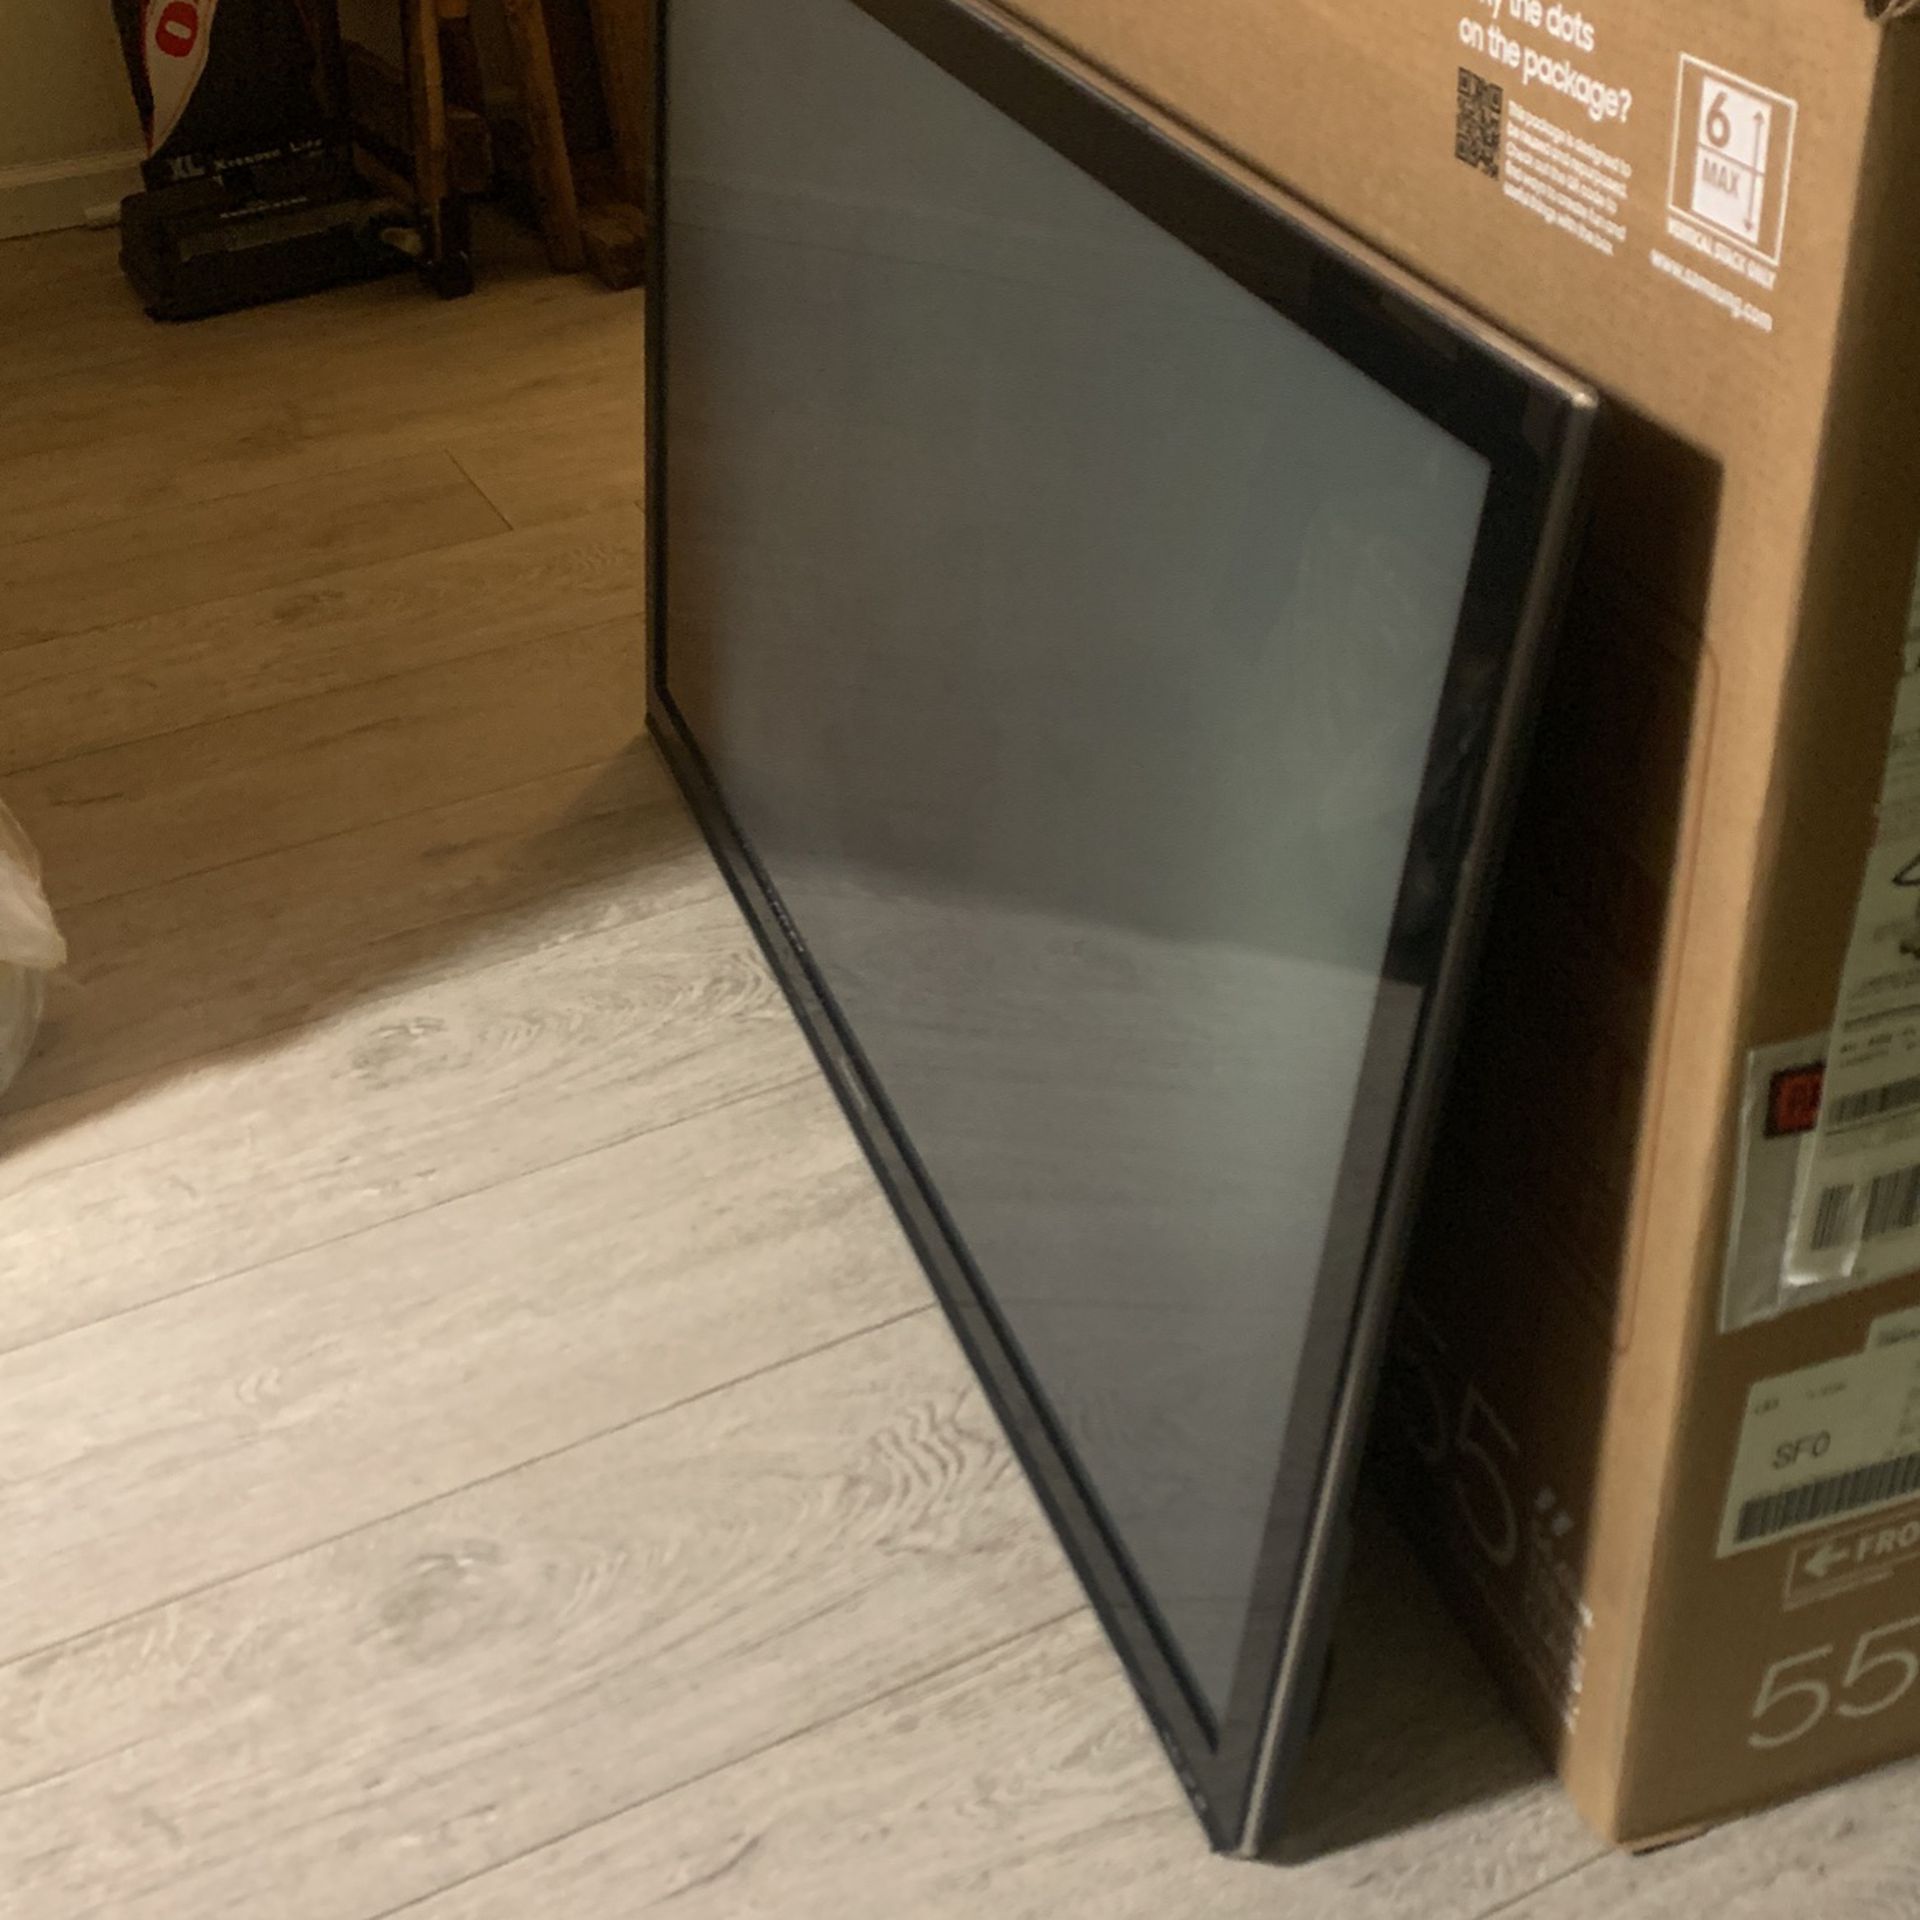 Panasonic 55” Flatscreen Tv